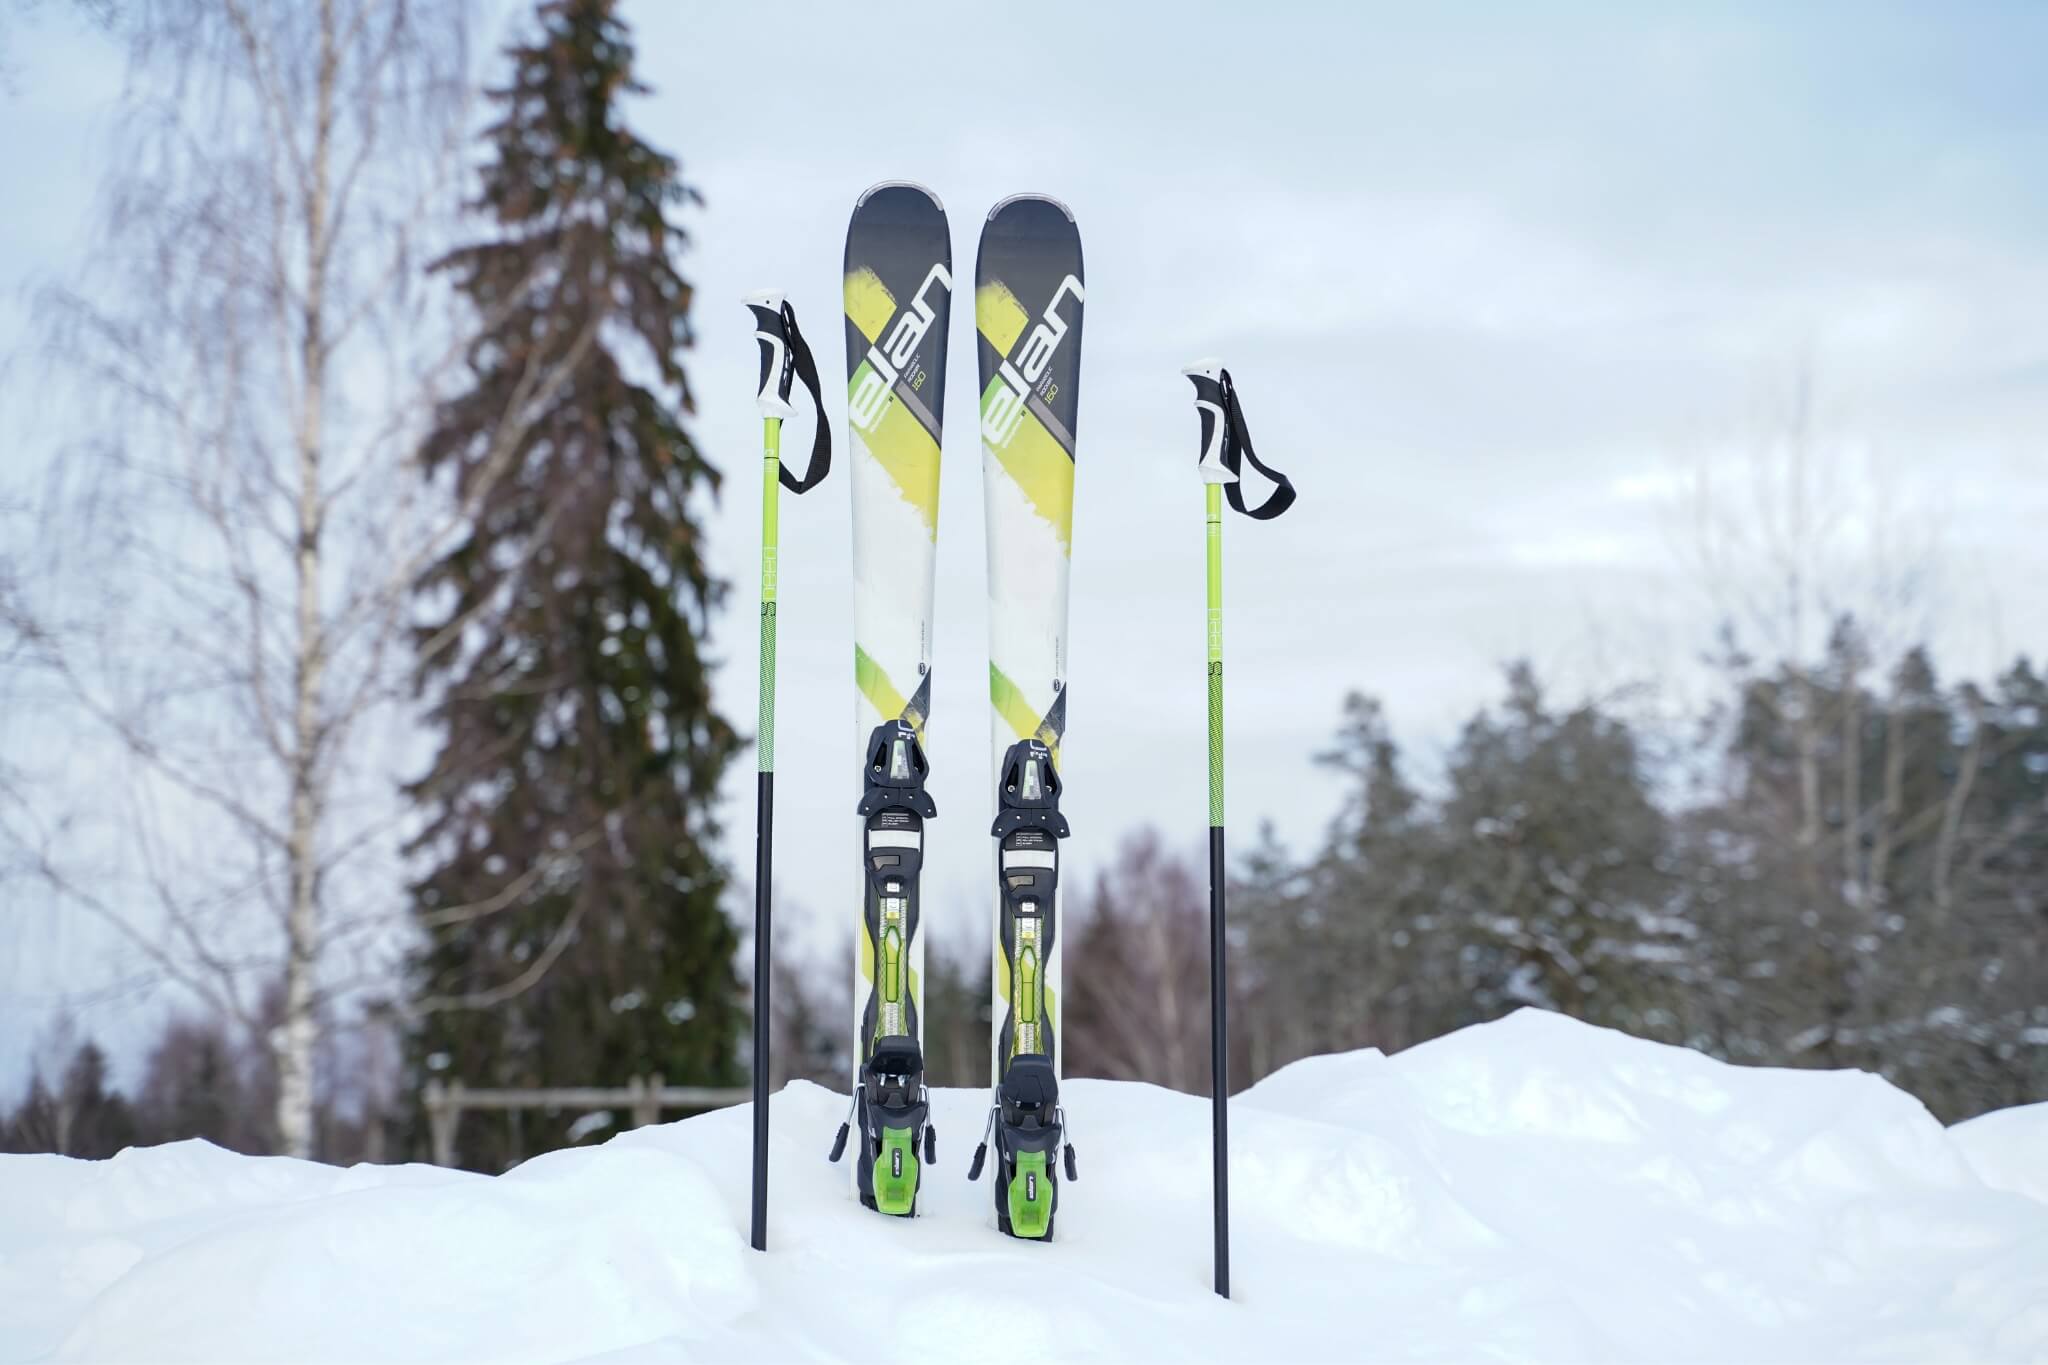 belofte neerhalen George Stevenson Ski's huren of kopen: hoelang moeten ski's zijn? - yelr •